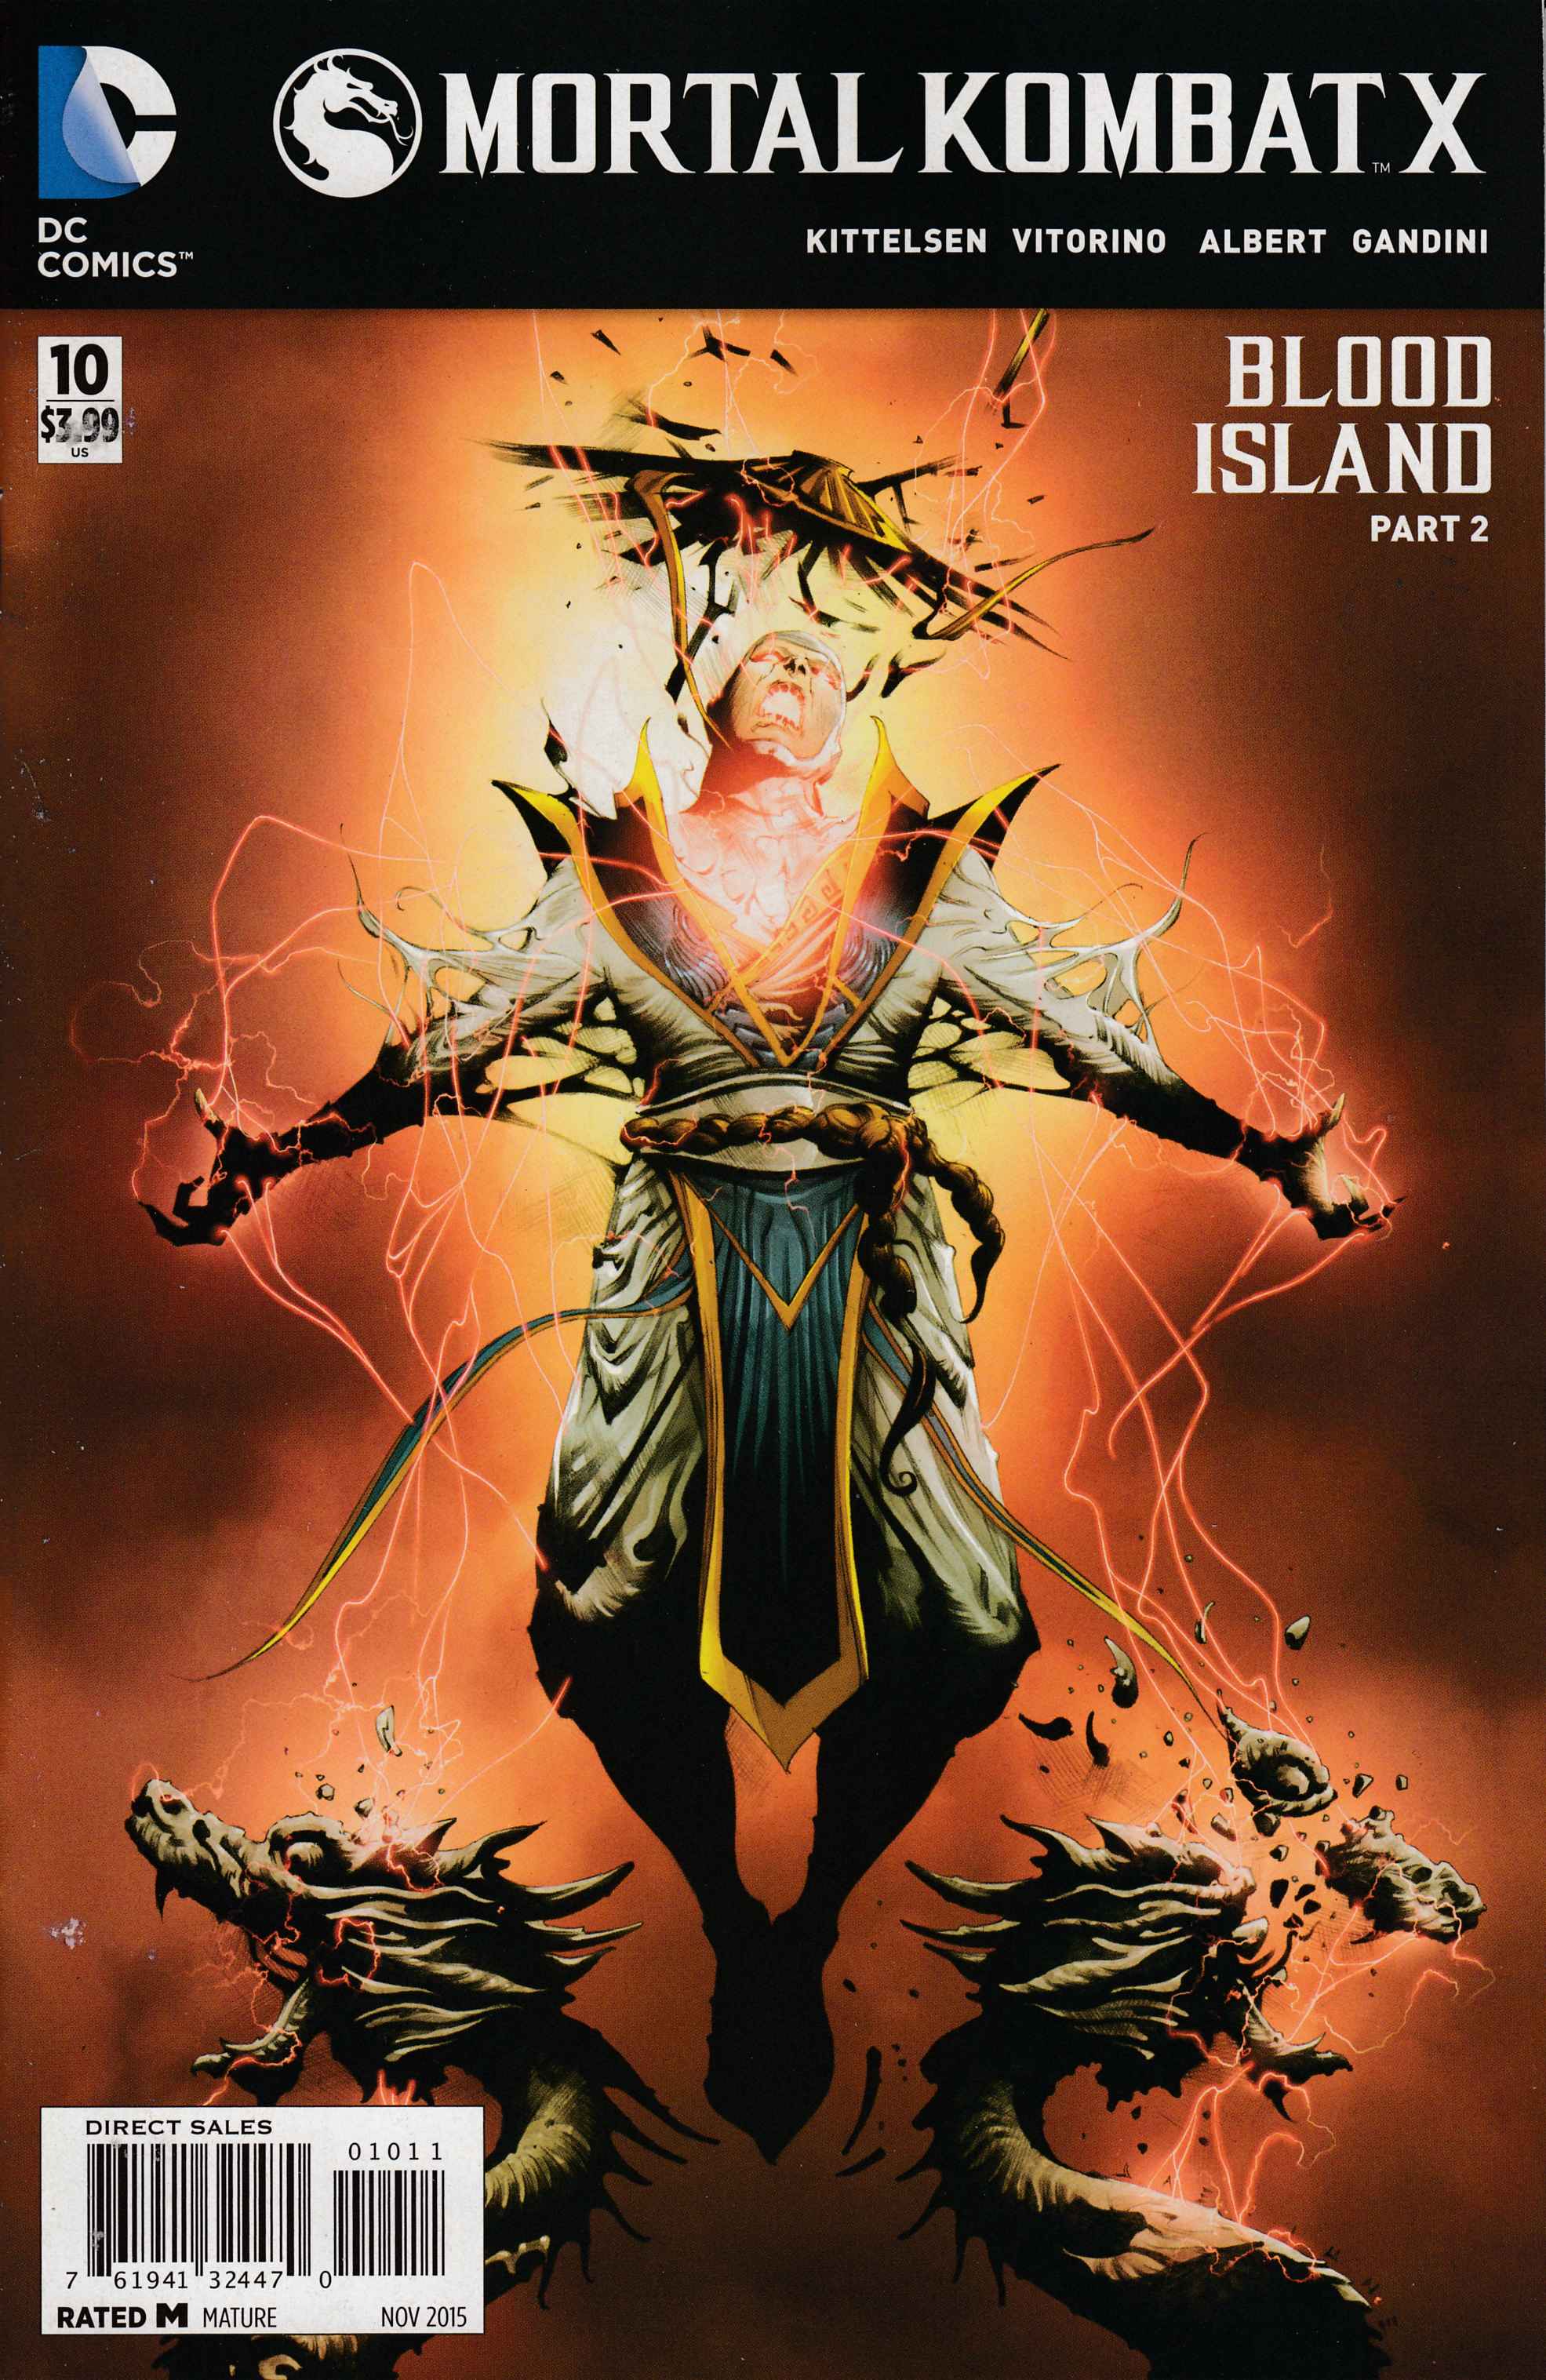 Mortal Kombat X Issue 5, Mortal Kombat Wiki